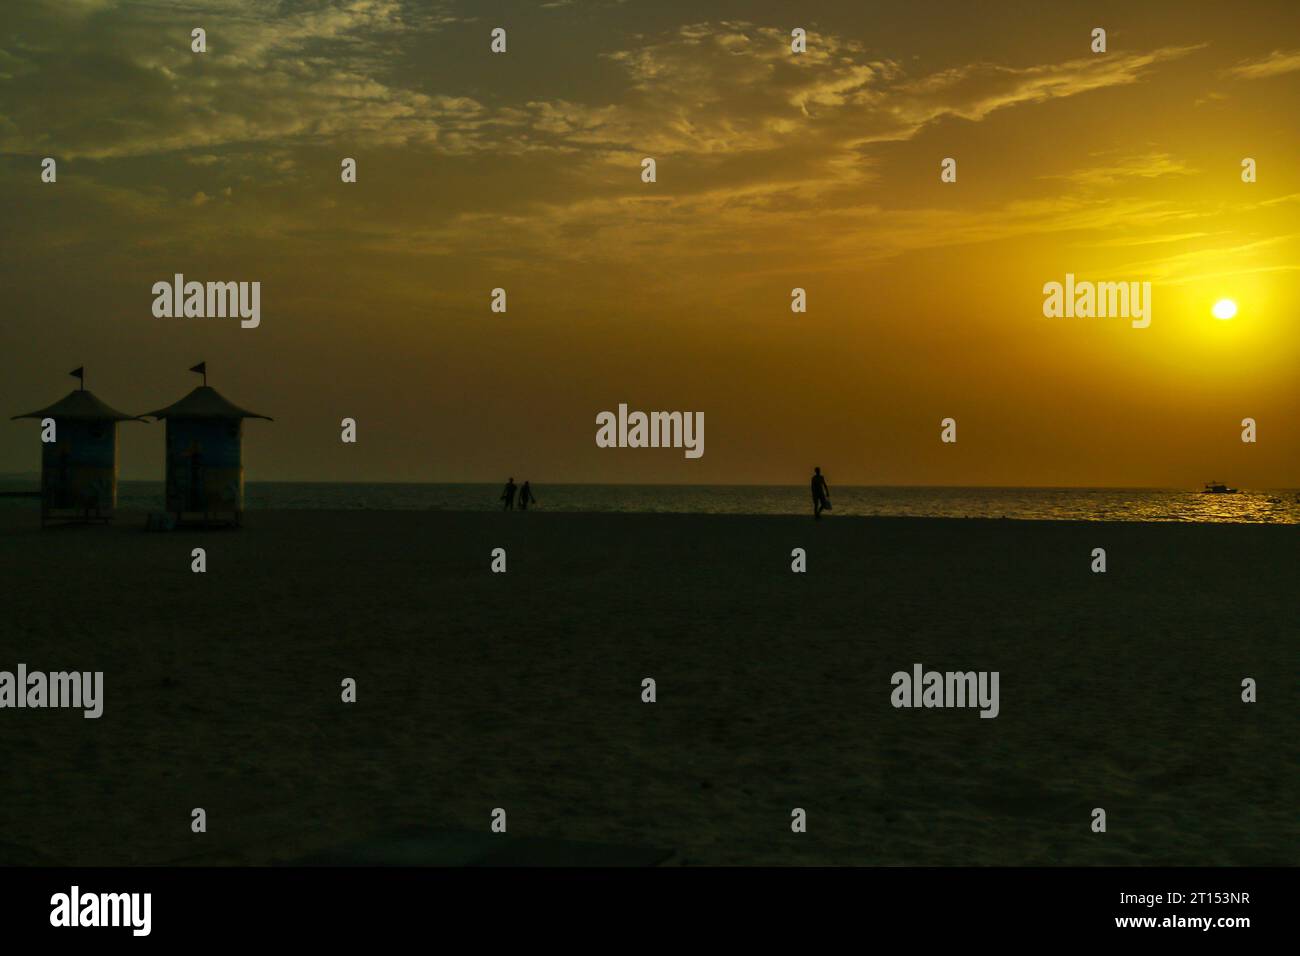 Wunderschöner Blick auf den Sonnenuntergang vom Dubai Jumeirah Beach, Dubai, Vereinigte Arabische Emirate. Stockfoto